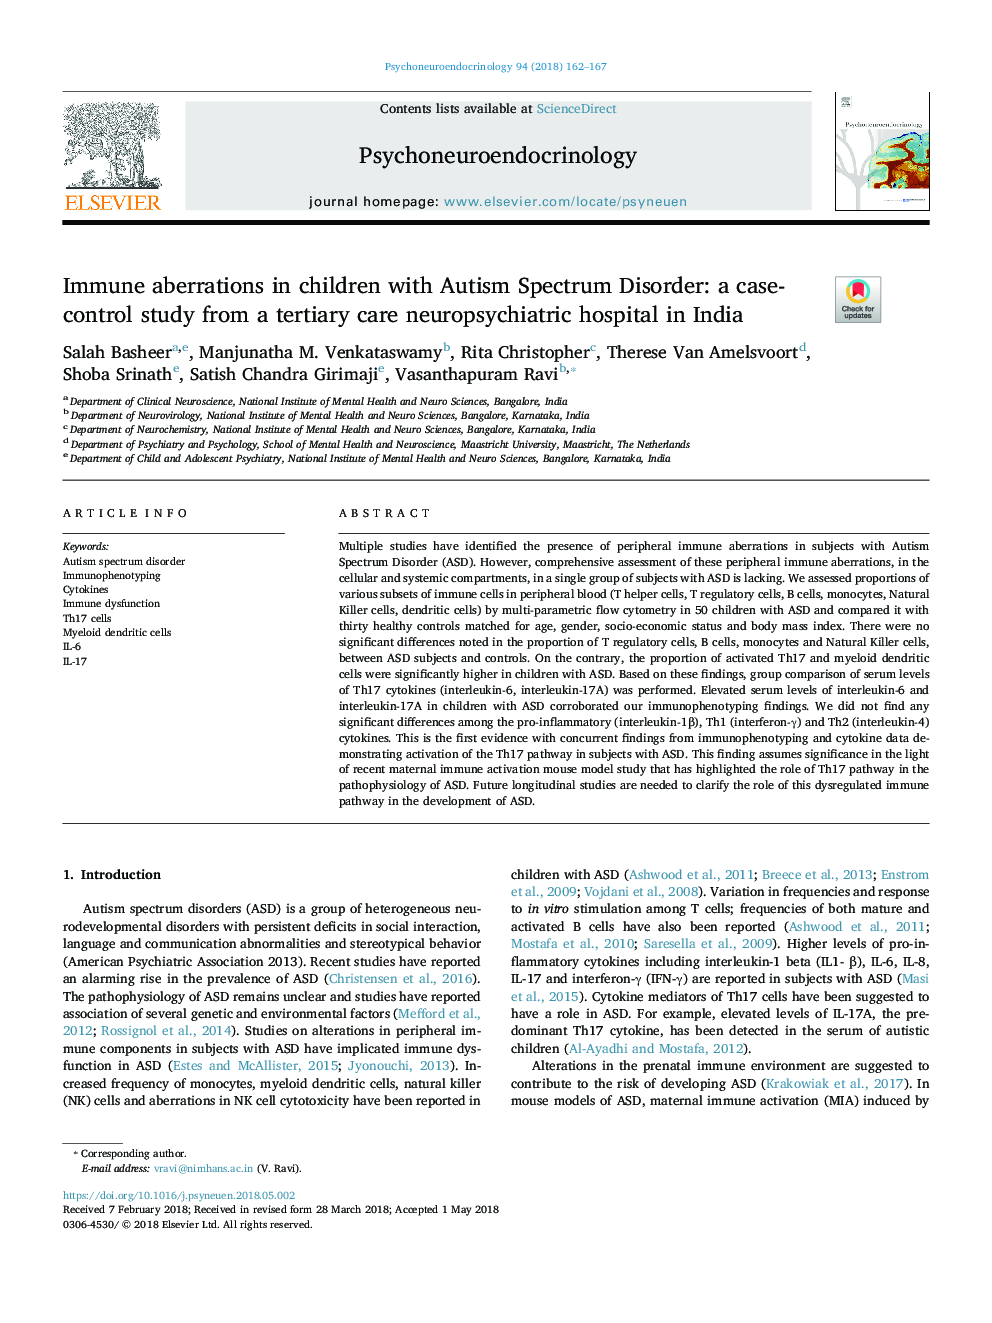 اختلالات ایمنی در کودکان مبتلا به اختلال اسپکتروم اوتیسم: یک مطالعه مورد شاهدی از بیمارستان عصب شناسی ترمیمی در هند 